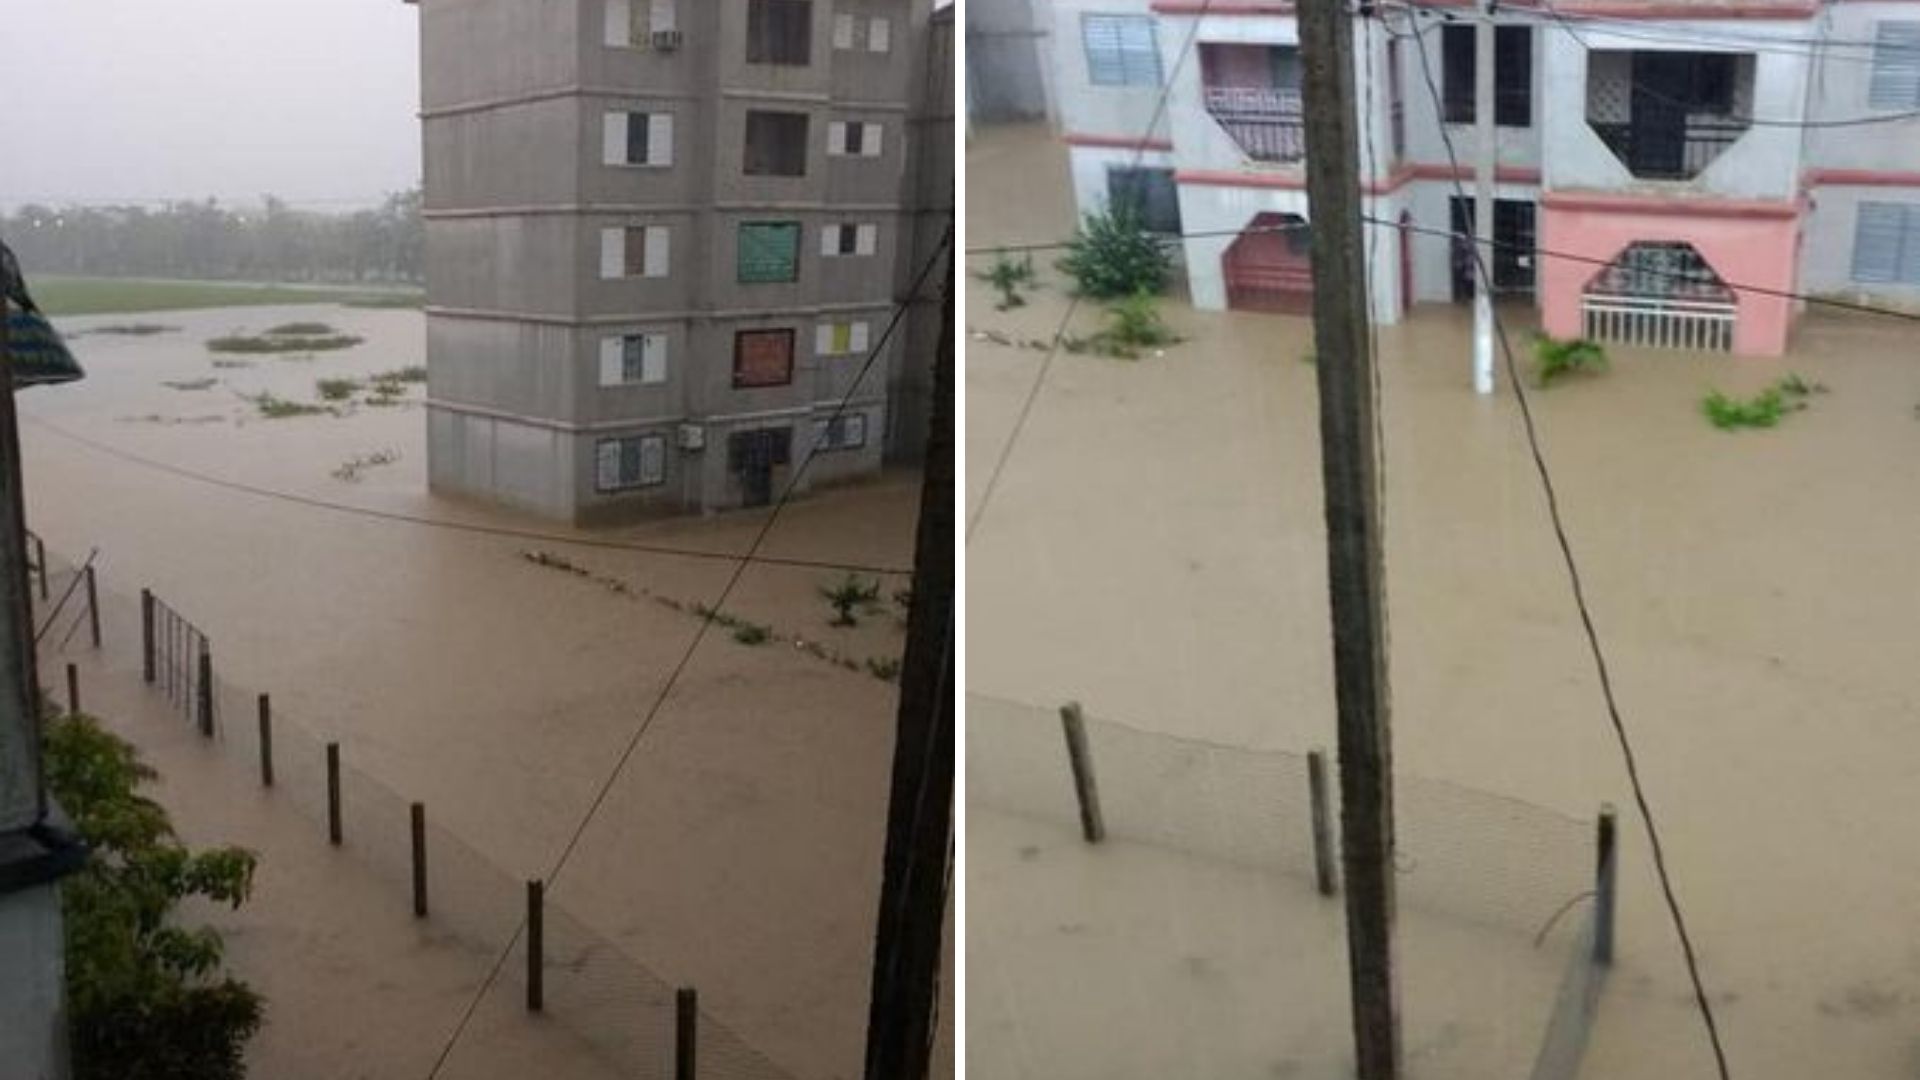 Debido al deterioro del clima, la Universidad de Pinar del Río “Hermanos Saíz Montes de Oca” cerró sus puertas desde el 2 de junio y hasta nuevo aviso